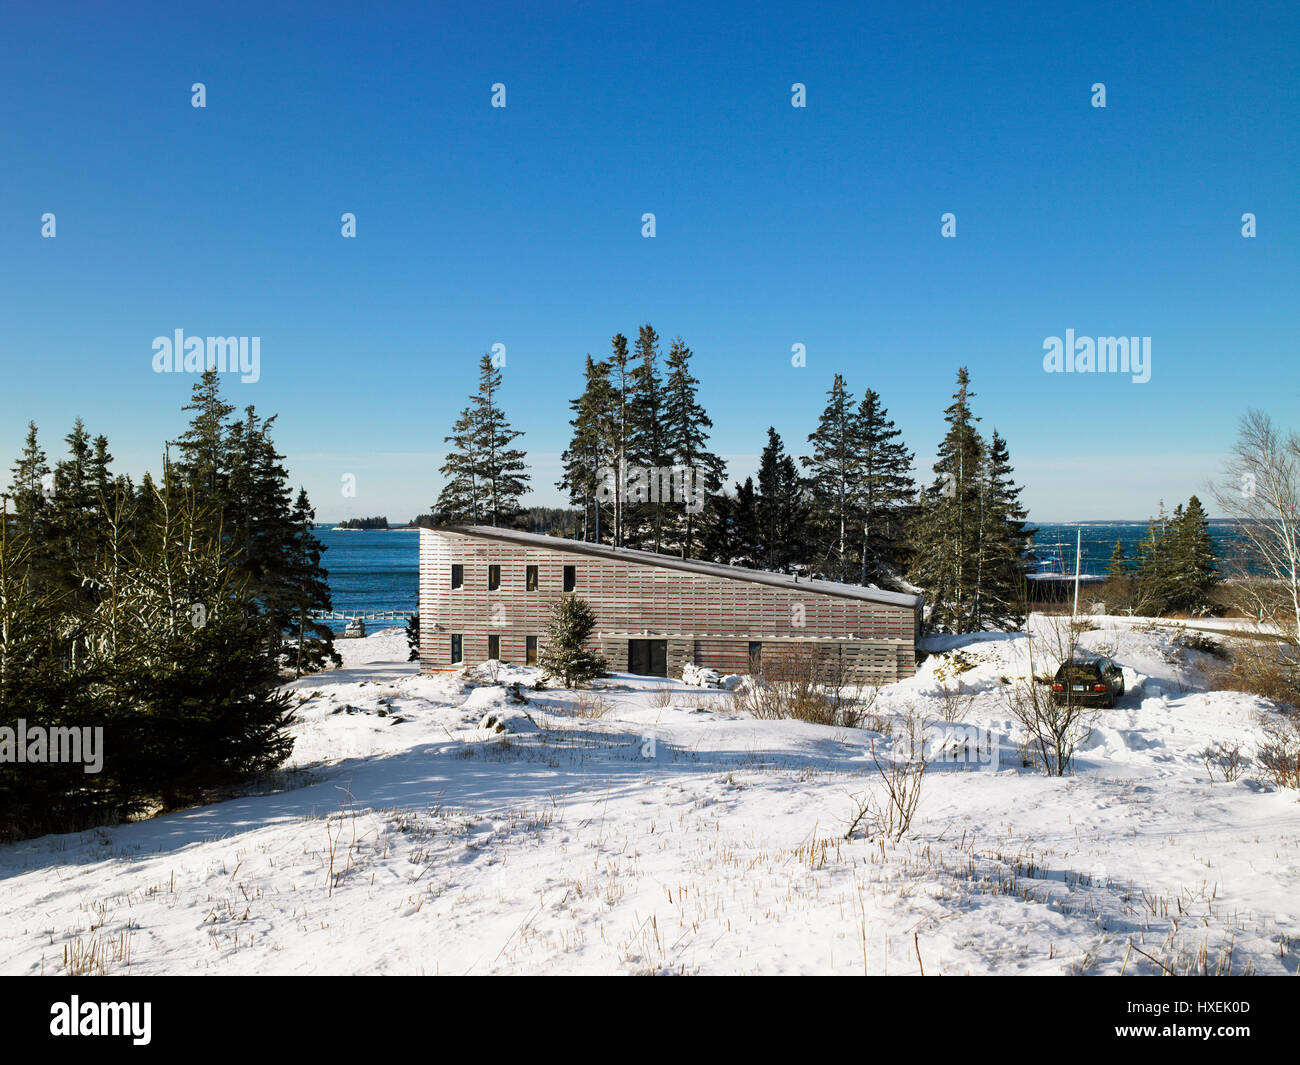 Erhöhten kontextuellen Außenansicht im Schnee. Island House, North Haven, Vereinigte Staaten von Amerika. Architekt: Christopher Campbell, 2008. Stockfoto